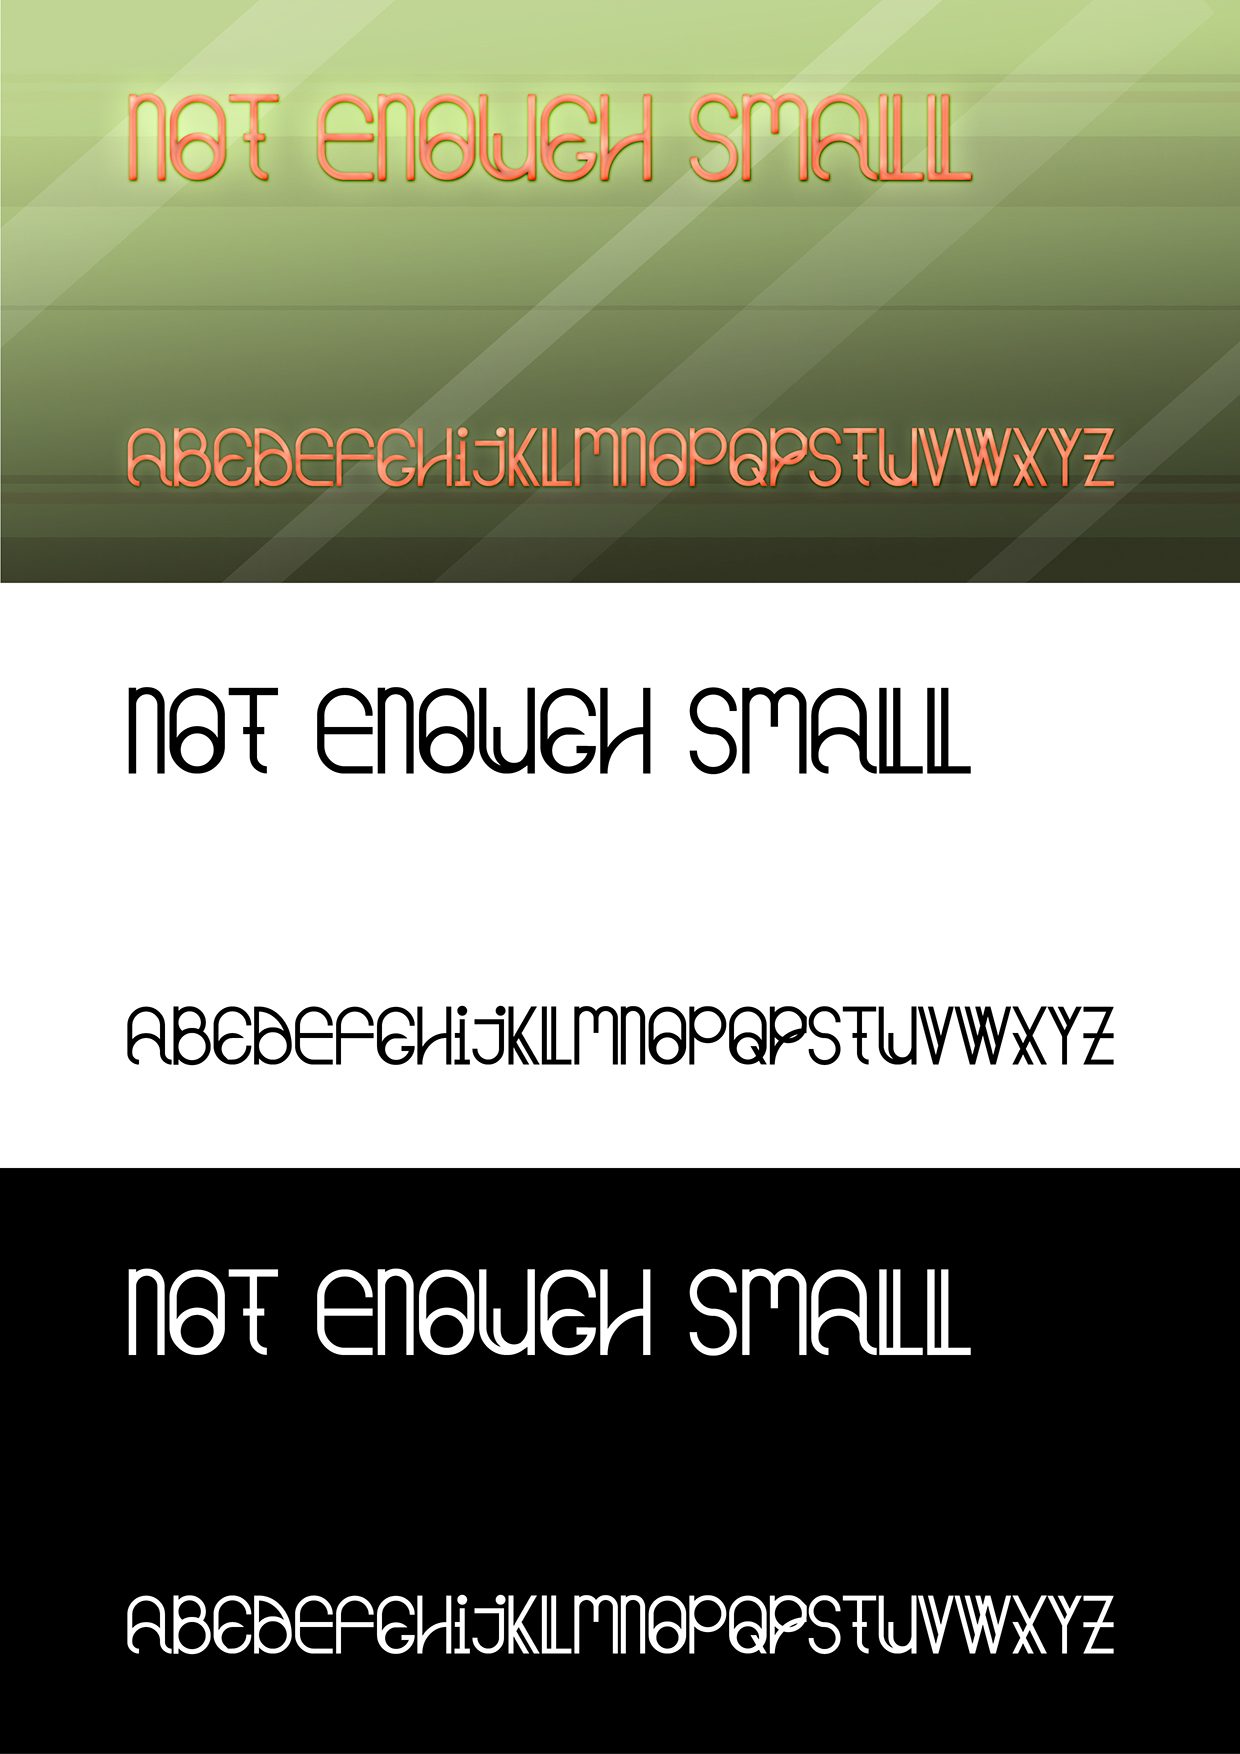 NotEnoughSmall font